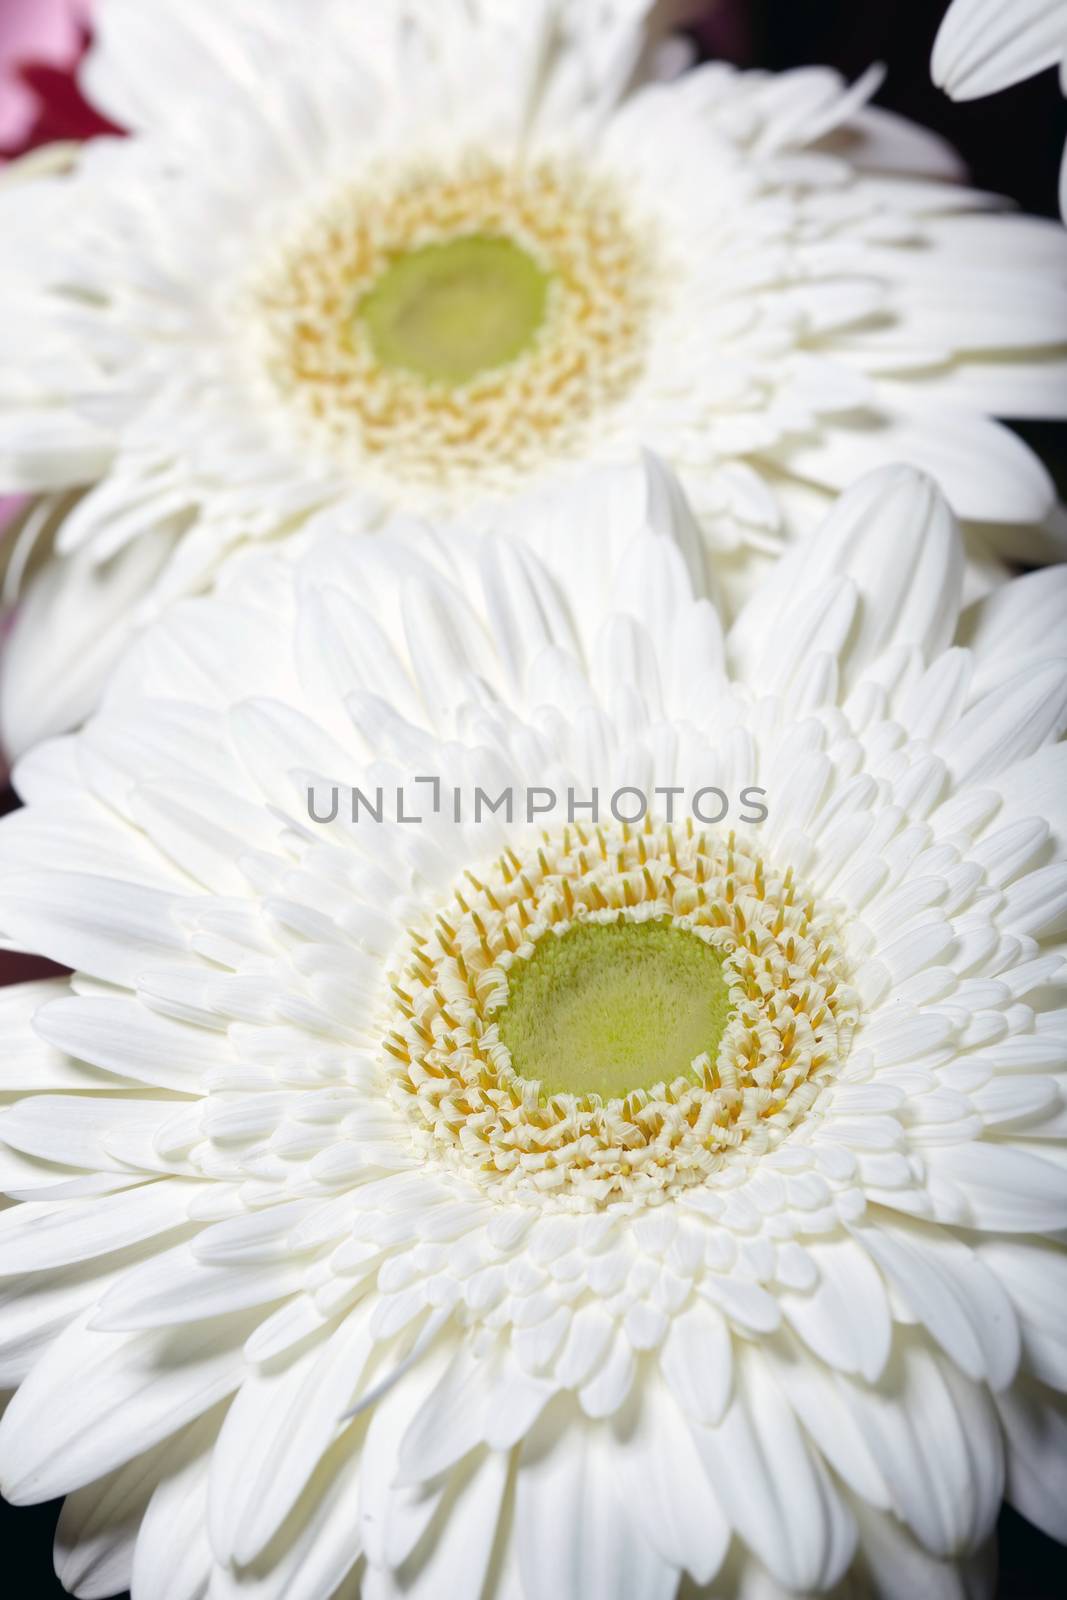 Chrysanthemum. Macro photo of the white flower